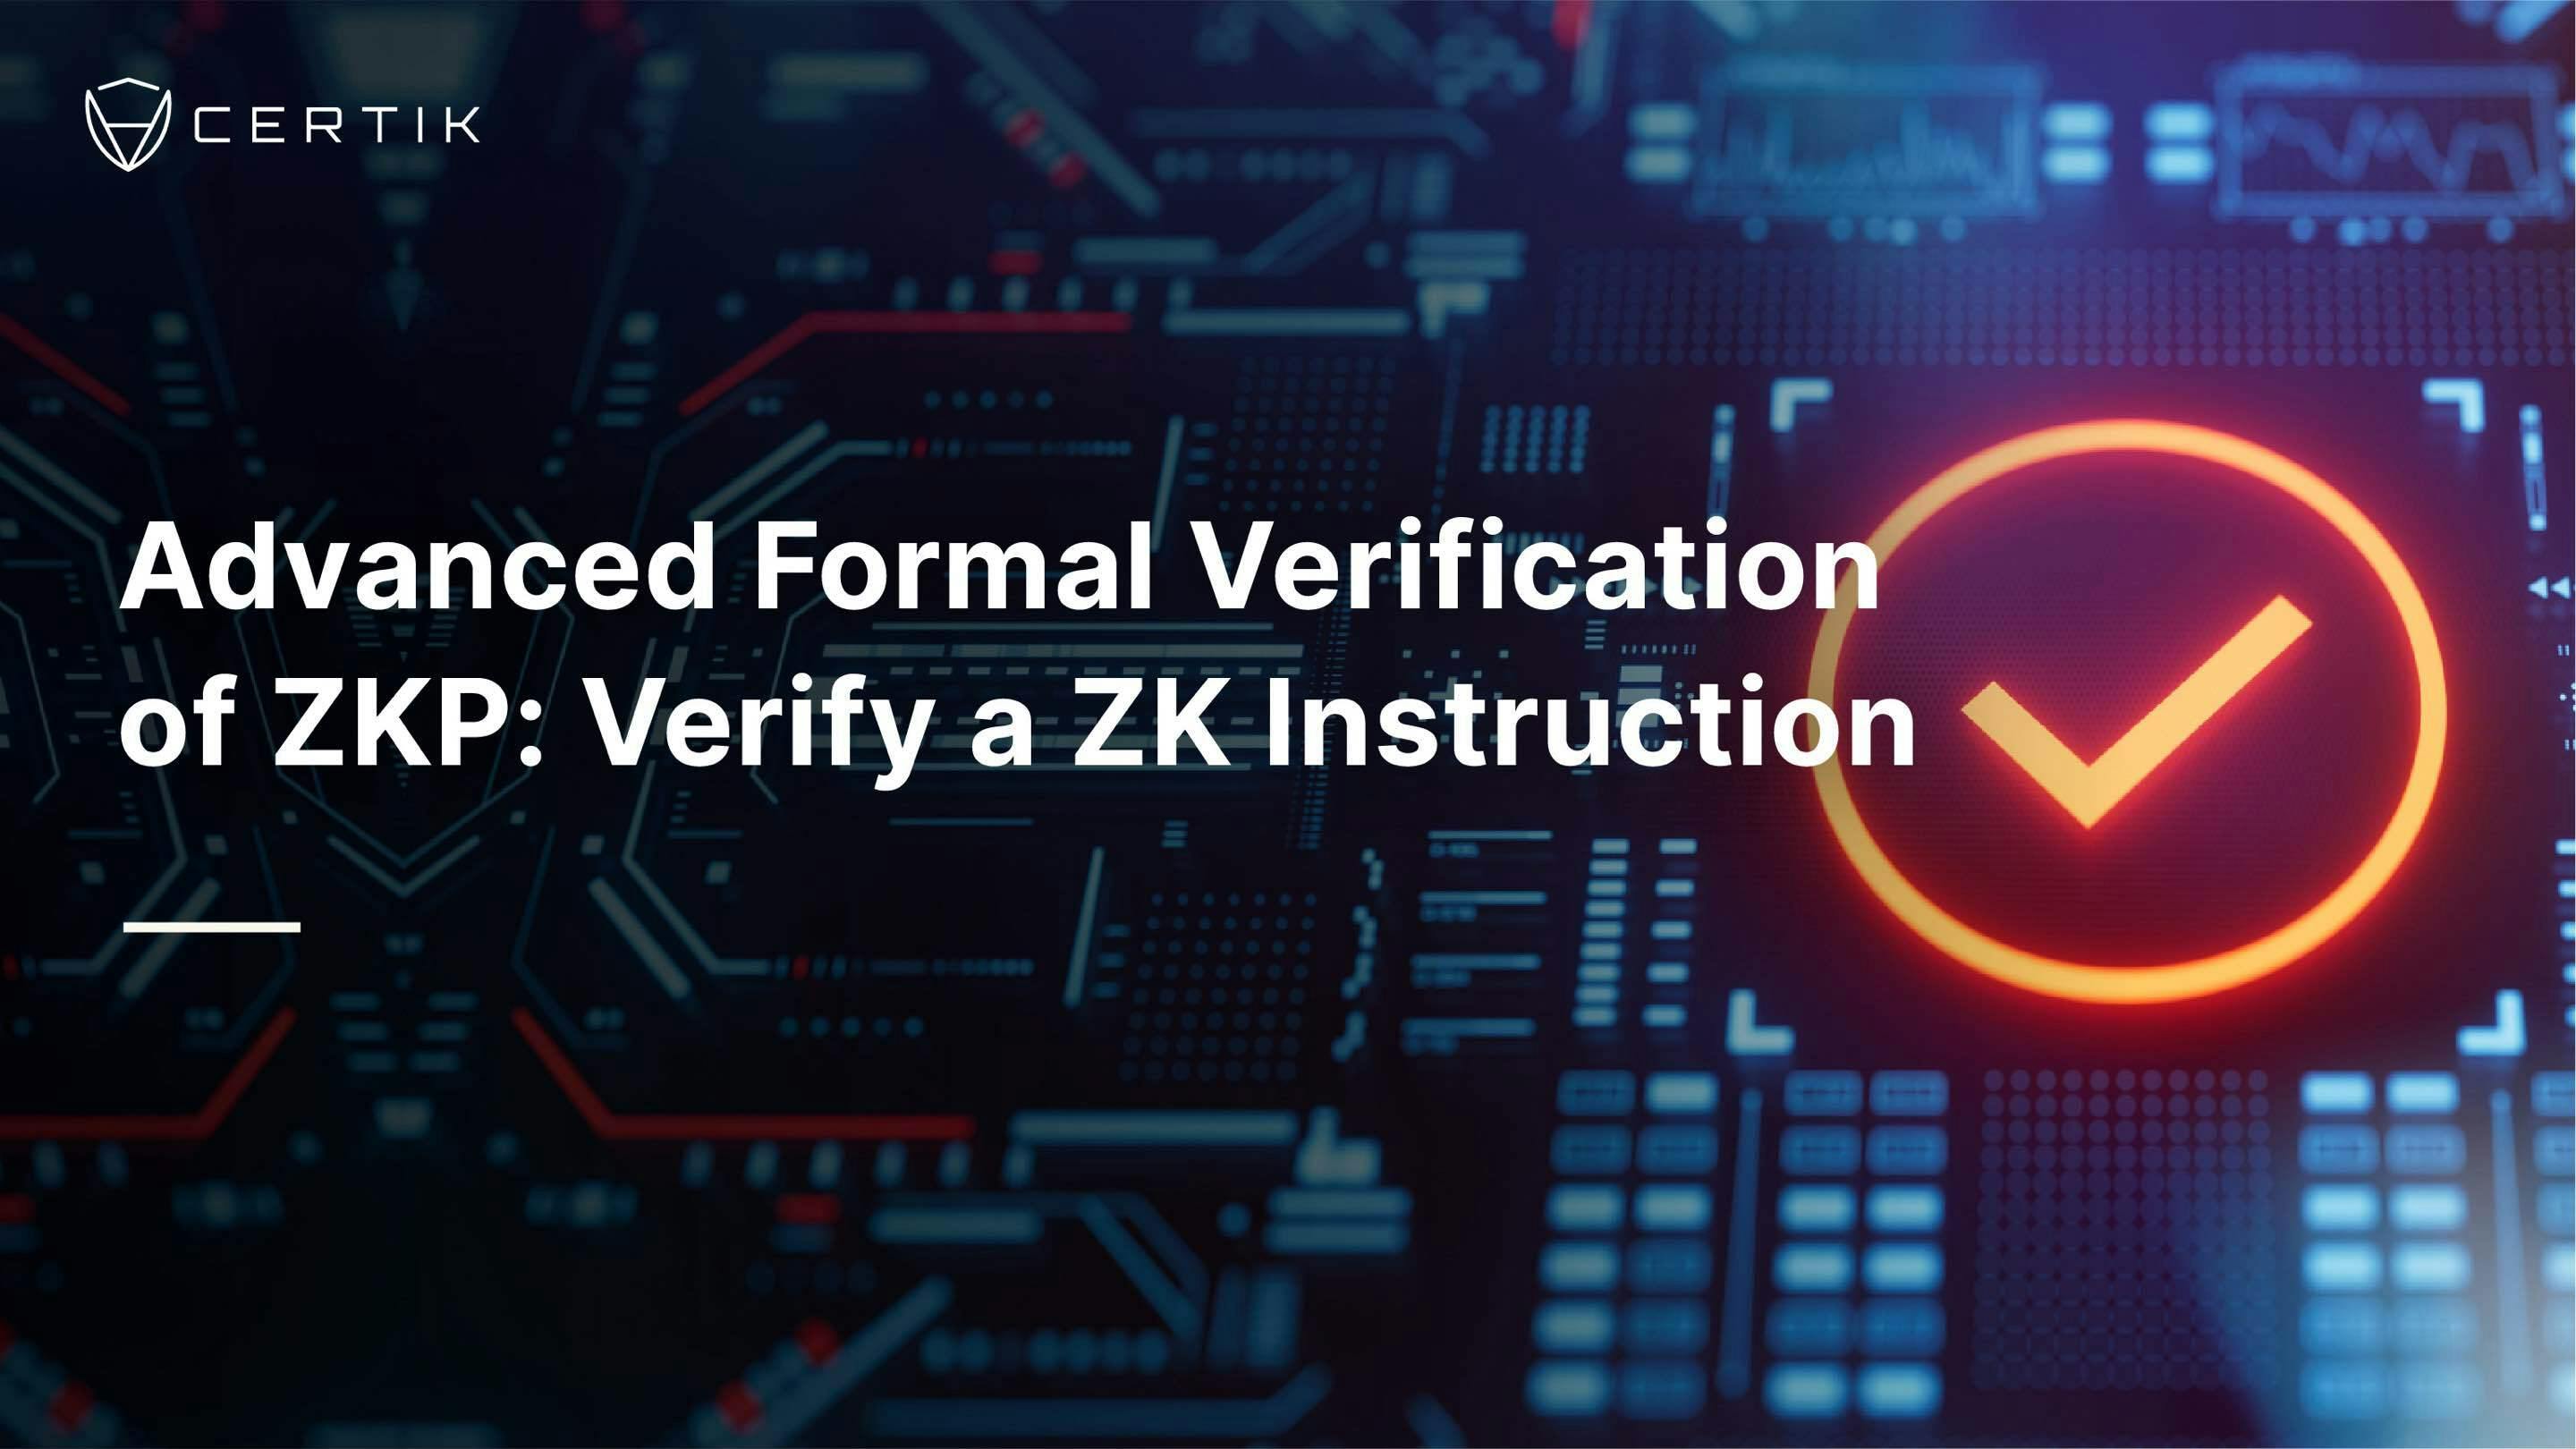 Advanced Formal Verification of ZKP: Verifying a ZK Instruction